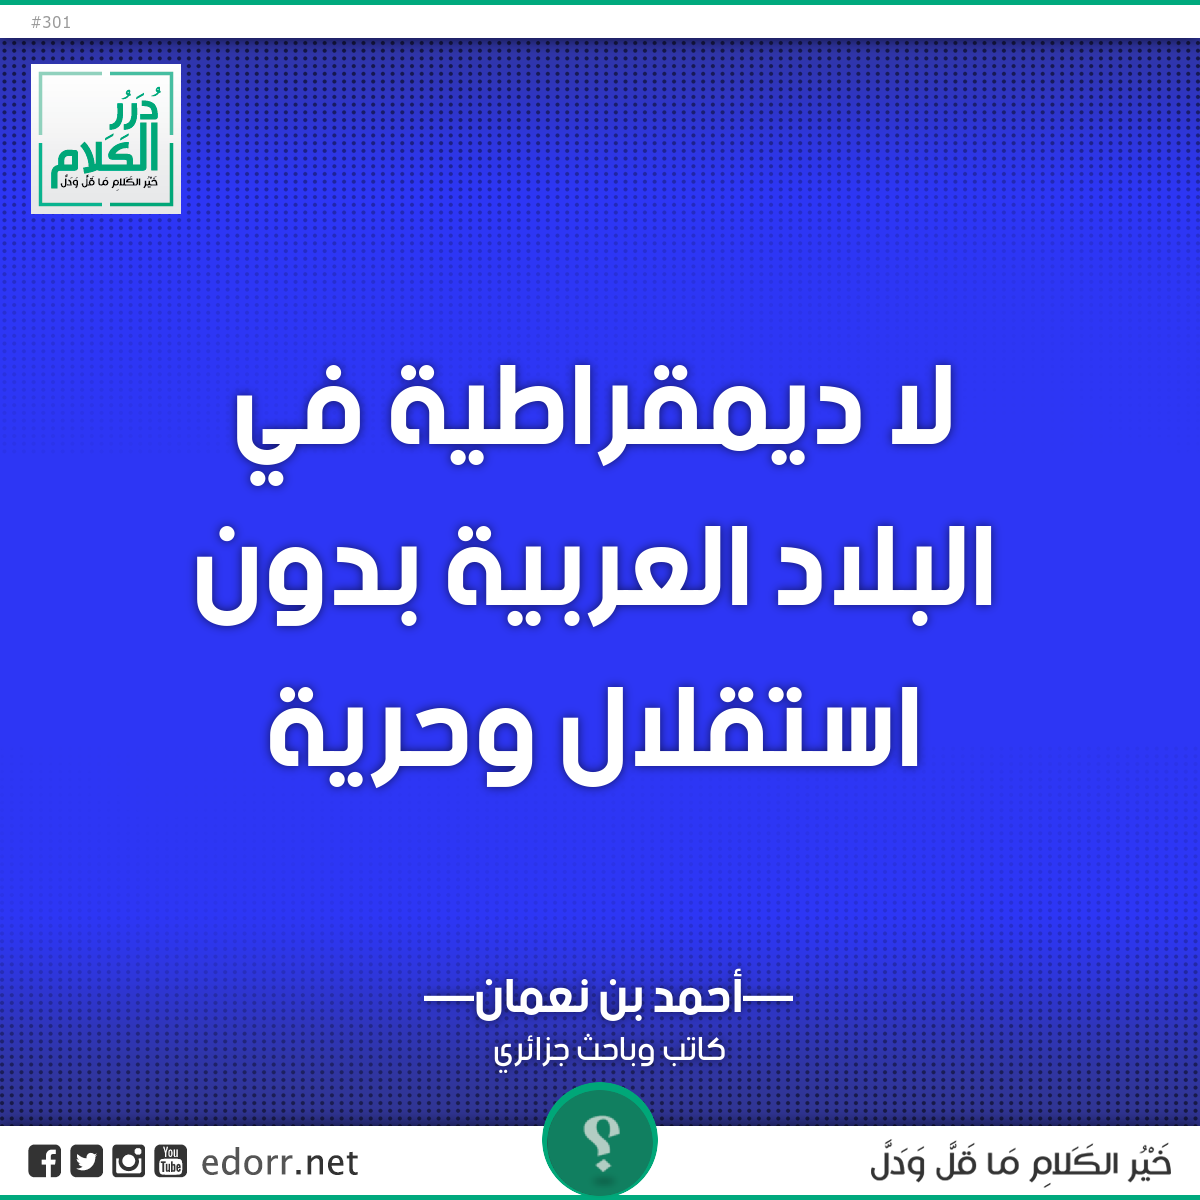 لا ديمقراطية في البلاد العربية بدون استقلال وحرية.